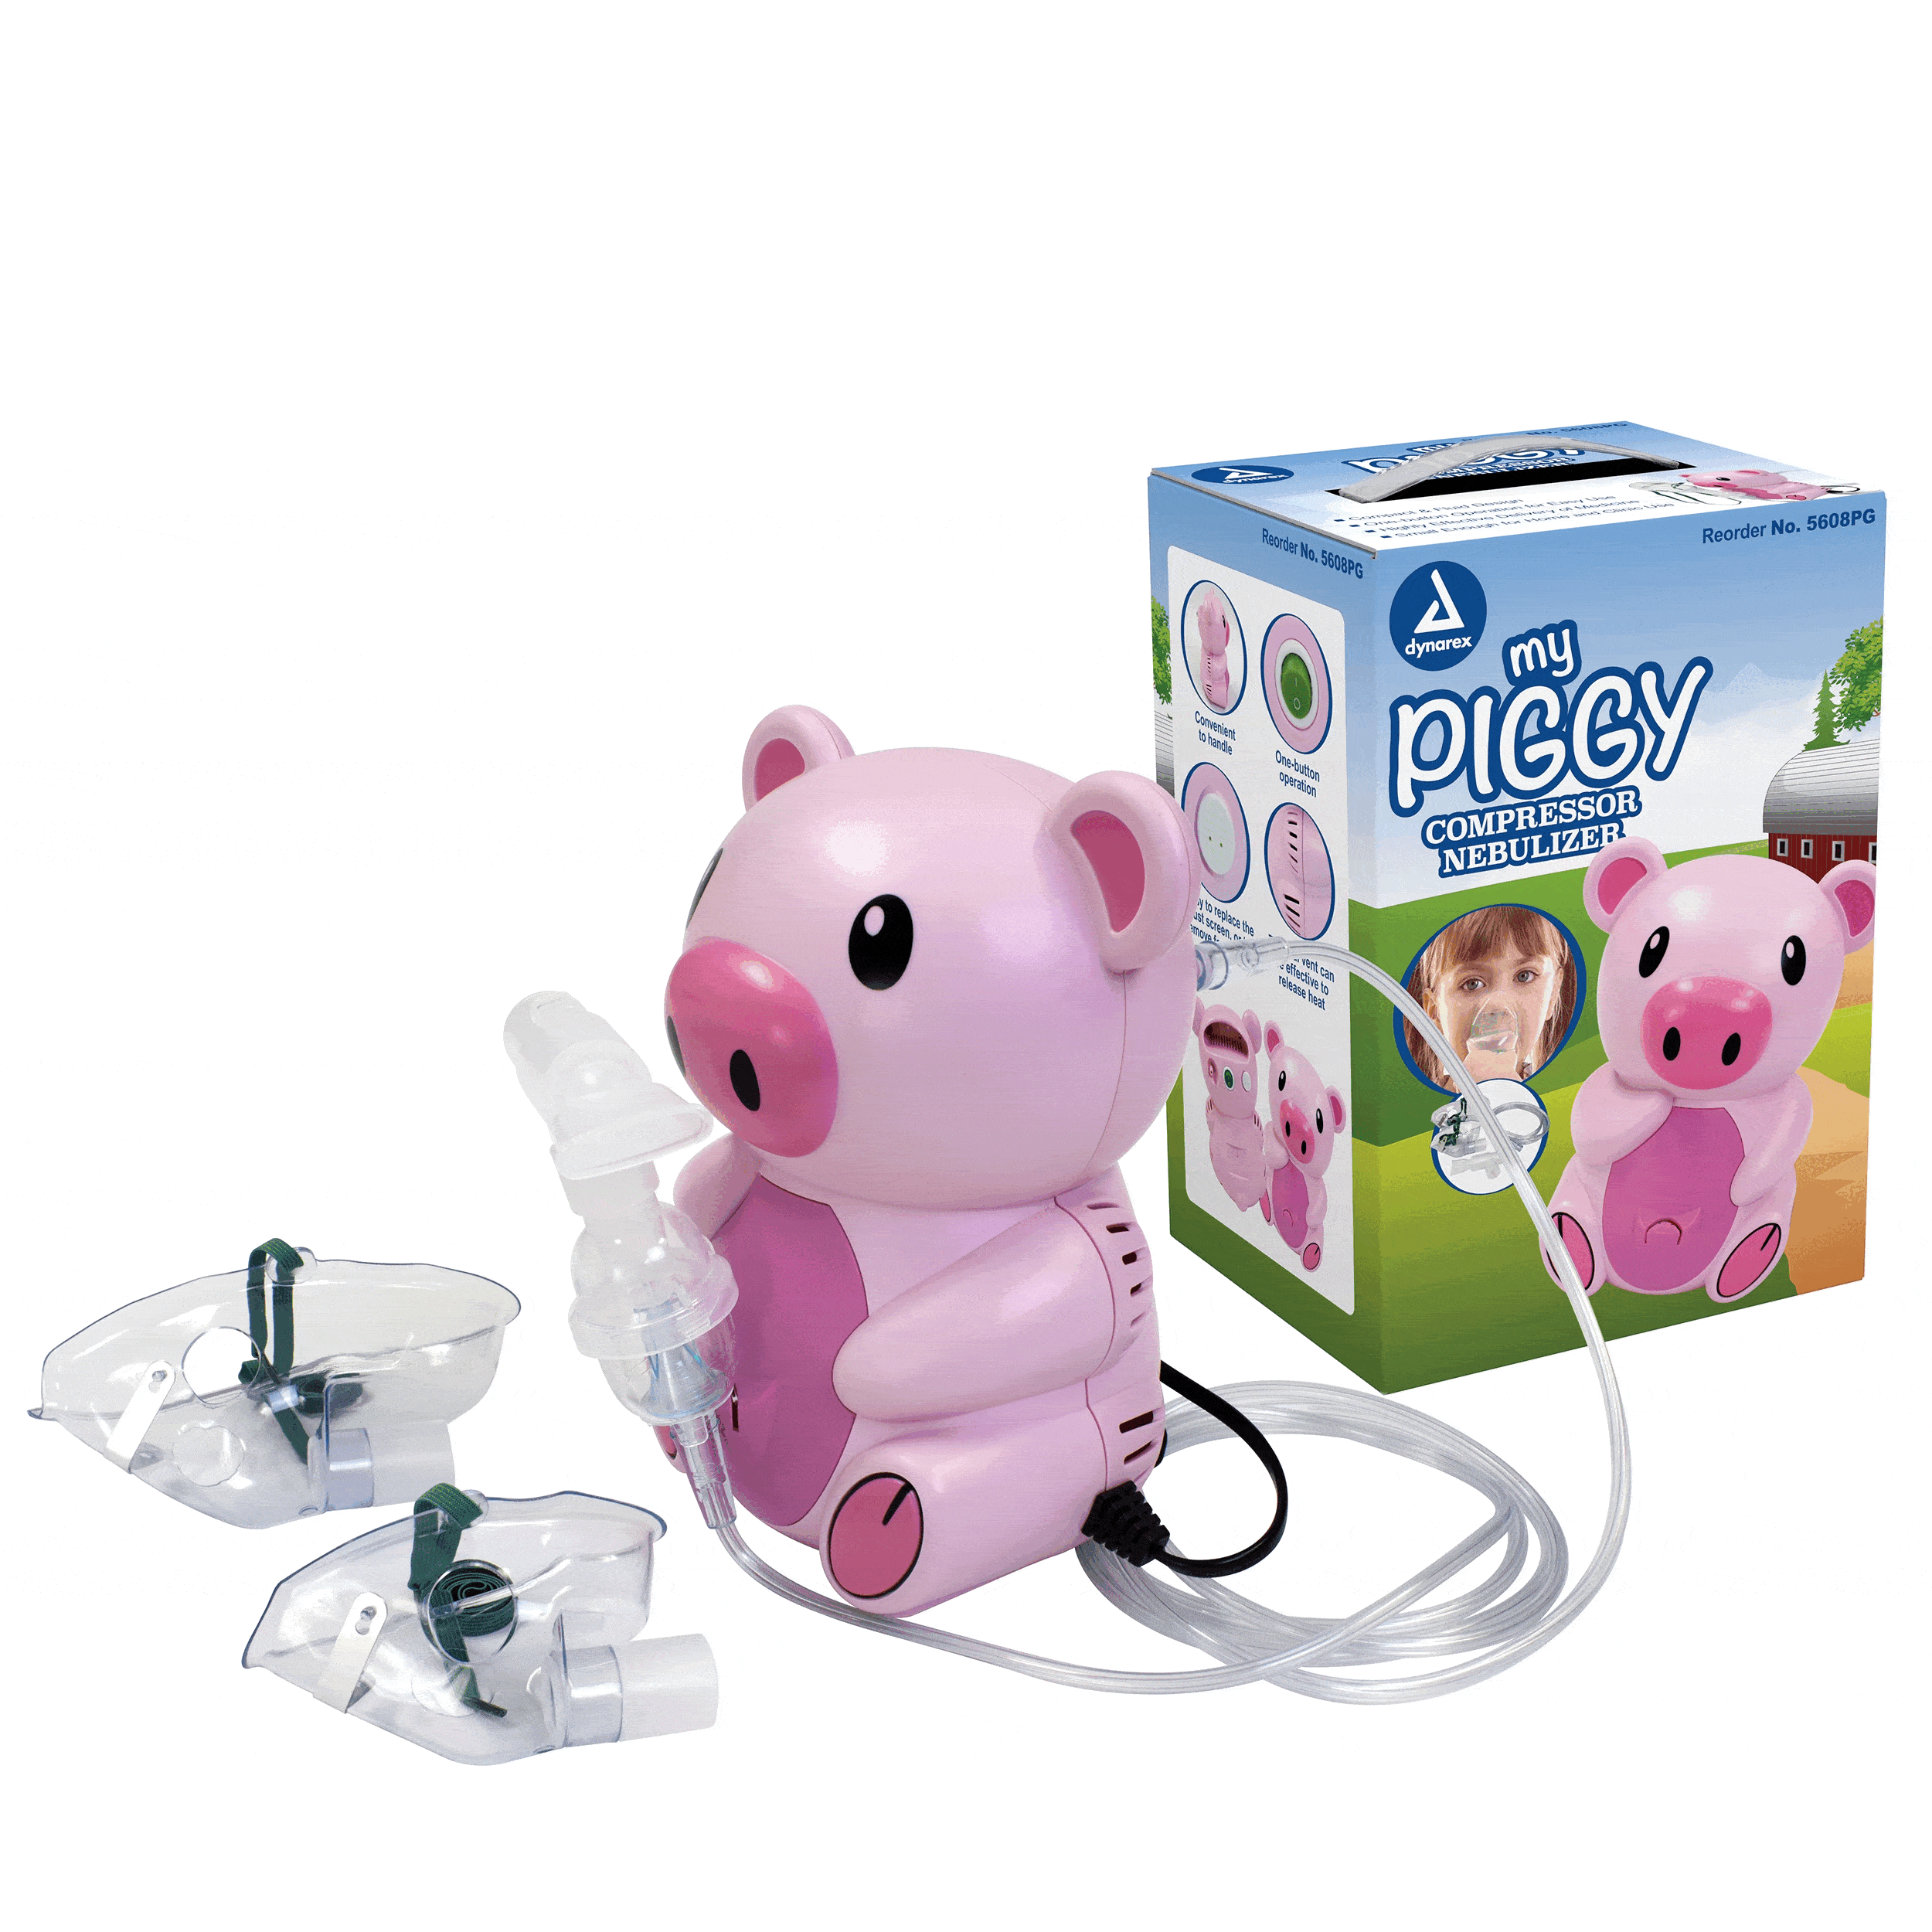 Resp-O2 Pediatric Nebulizer, Piggy, with Travel Bag, Case $/Case of 4  Dynarex 34404-W/BAG